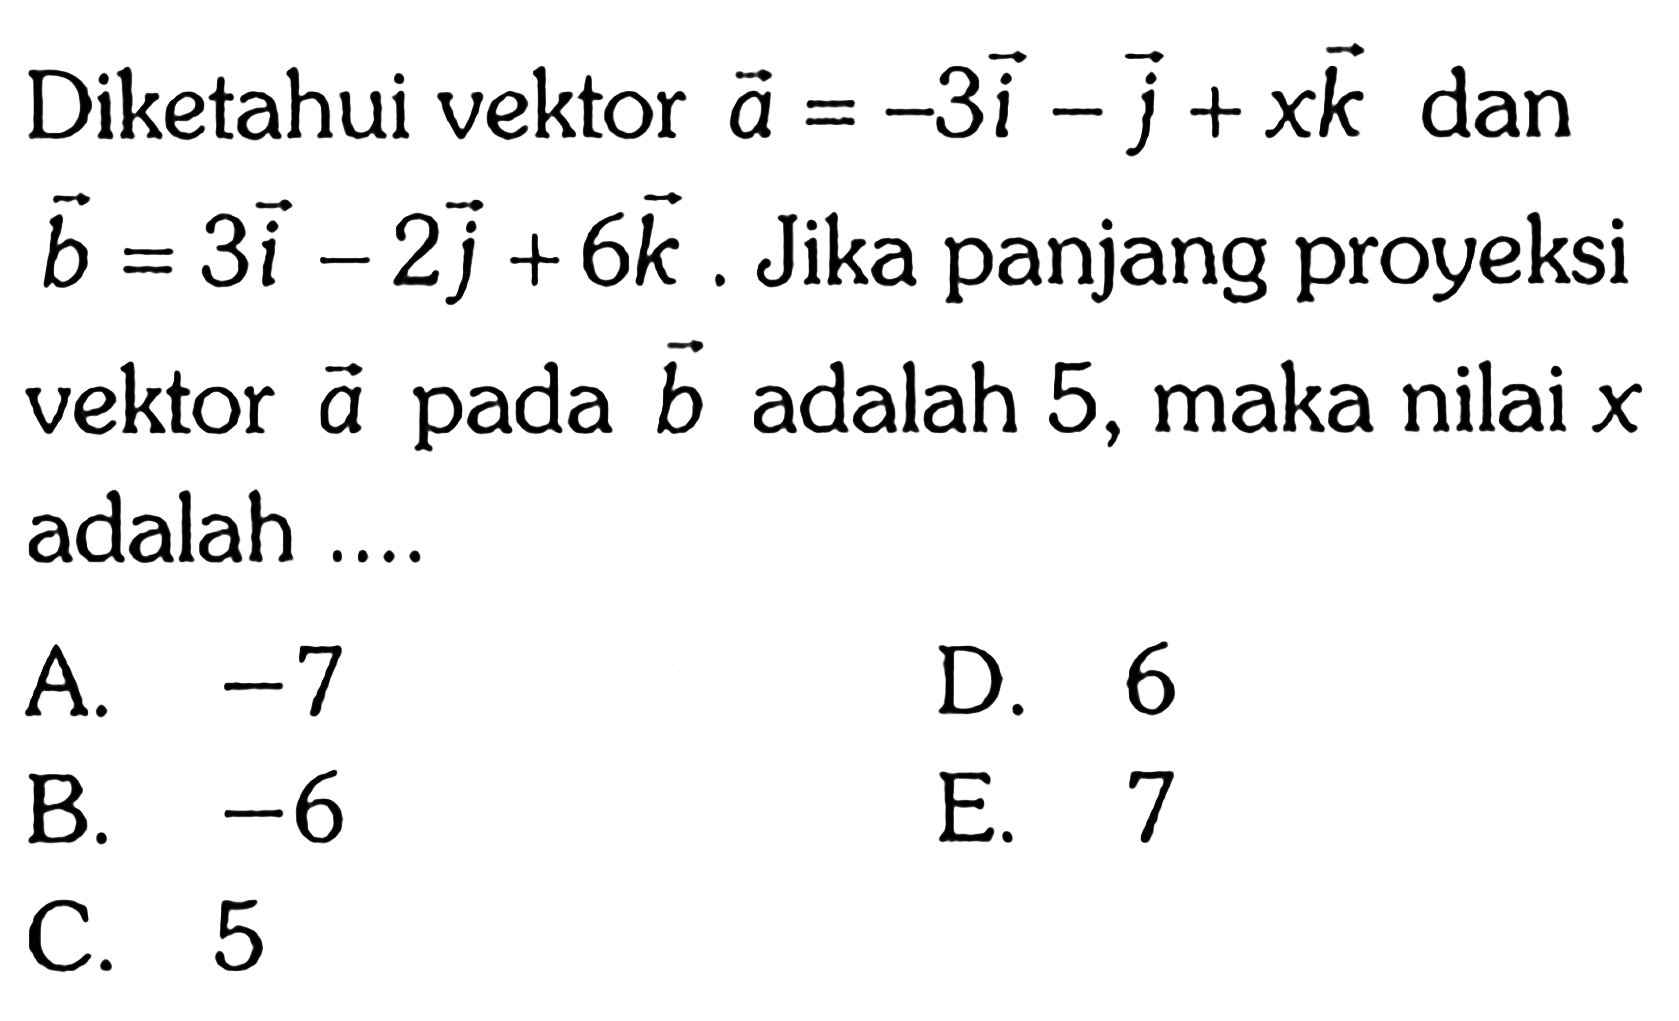 Diketahui vektor a=-3i-j+xk dan vektor b=3i-2j+6k. Jika panjang proyeksi vektor a pada vektor b adalah 5, maka nilai x adalah....